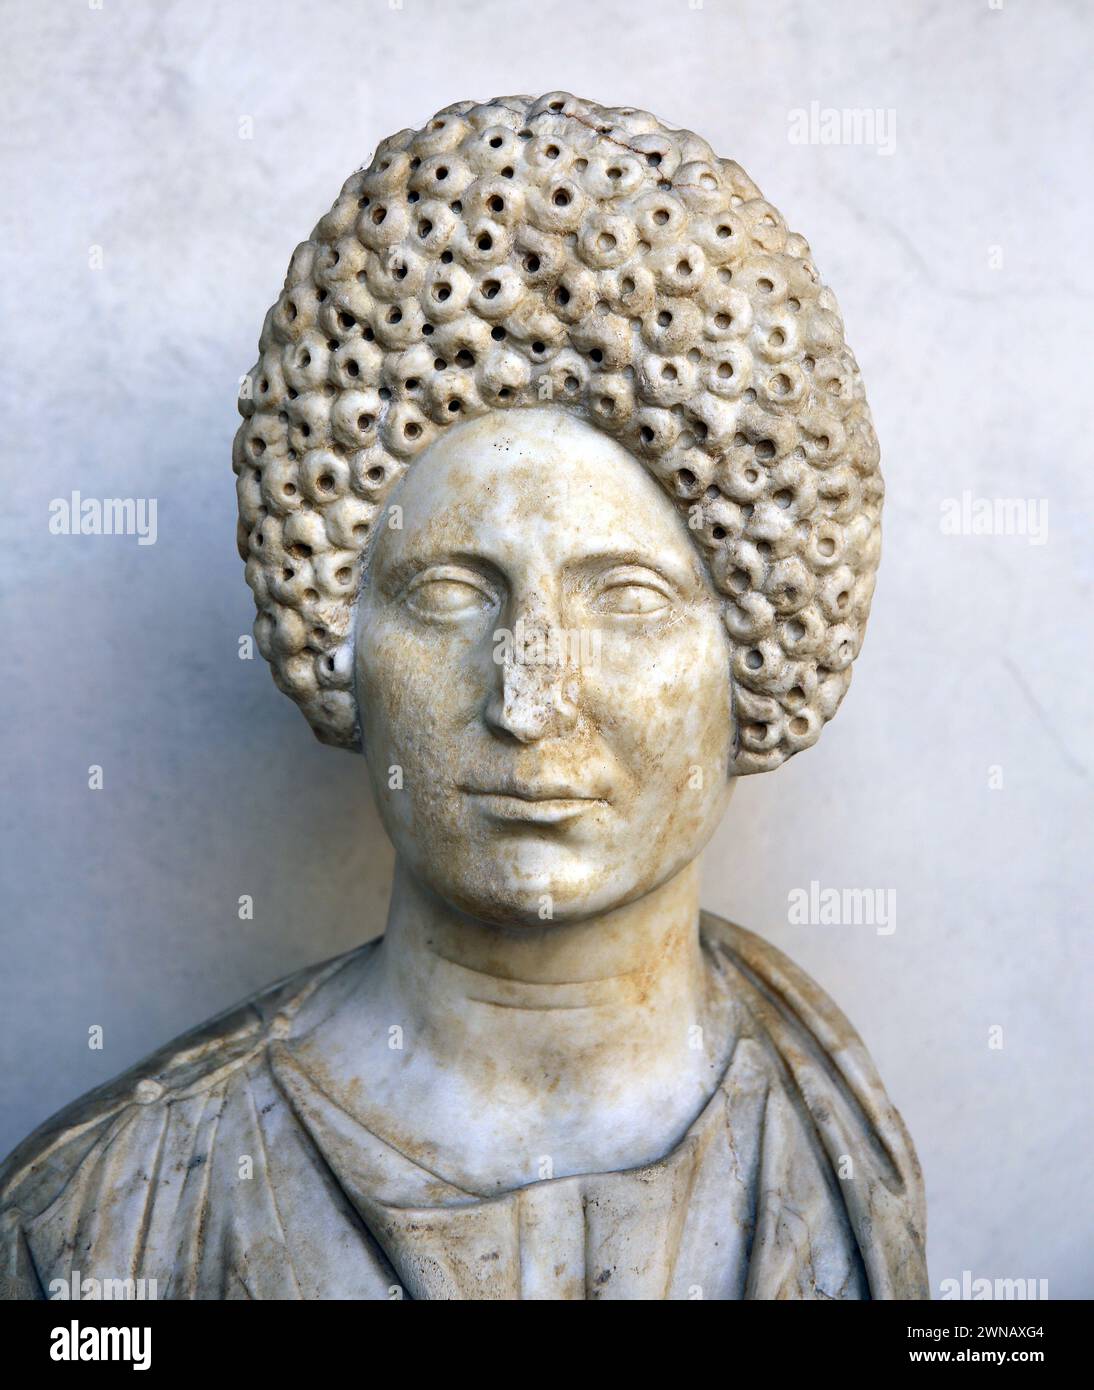 Portrait de vieille femme. Période romaine. Viterbo. c. 110 AD. Italie. Musée national romain (Thermes de Dioclétien). Rome. Italie. Banque D'Images